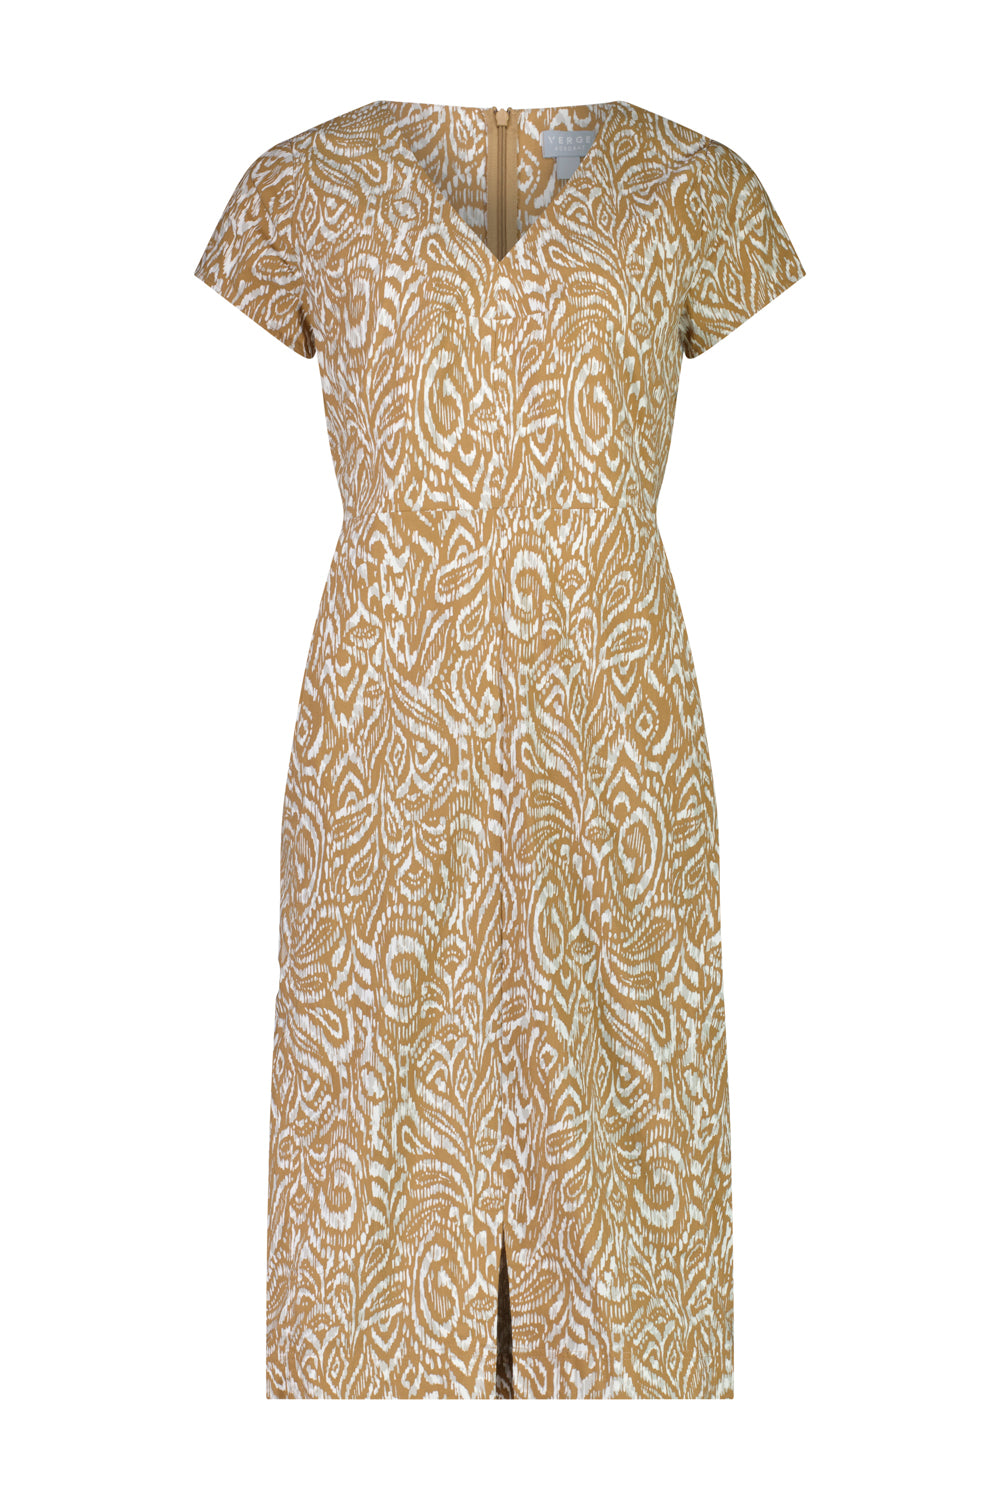 Acrobat Valley Dress - Toffee - Dress VERGE